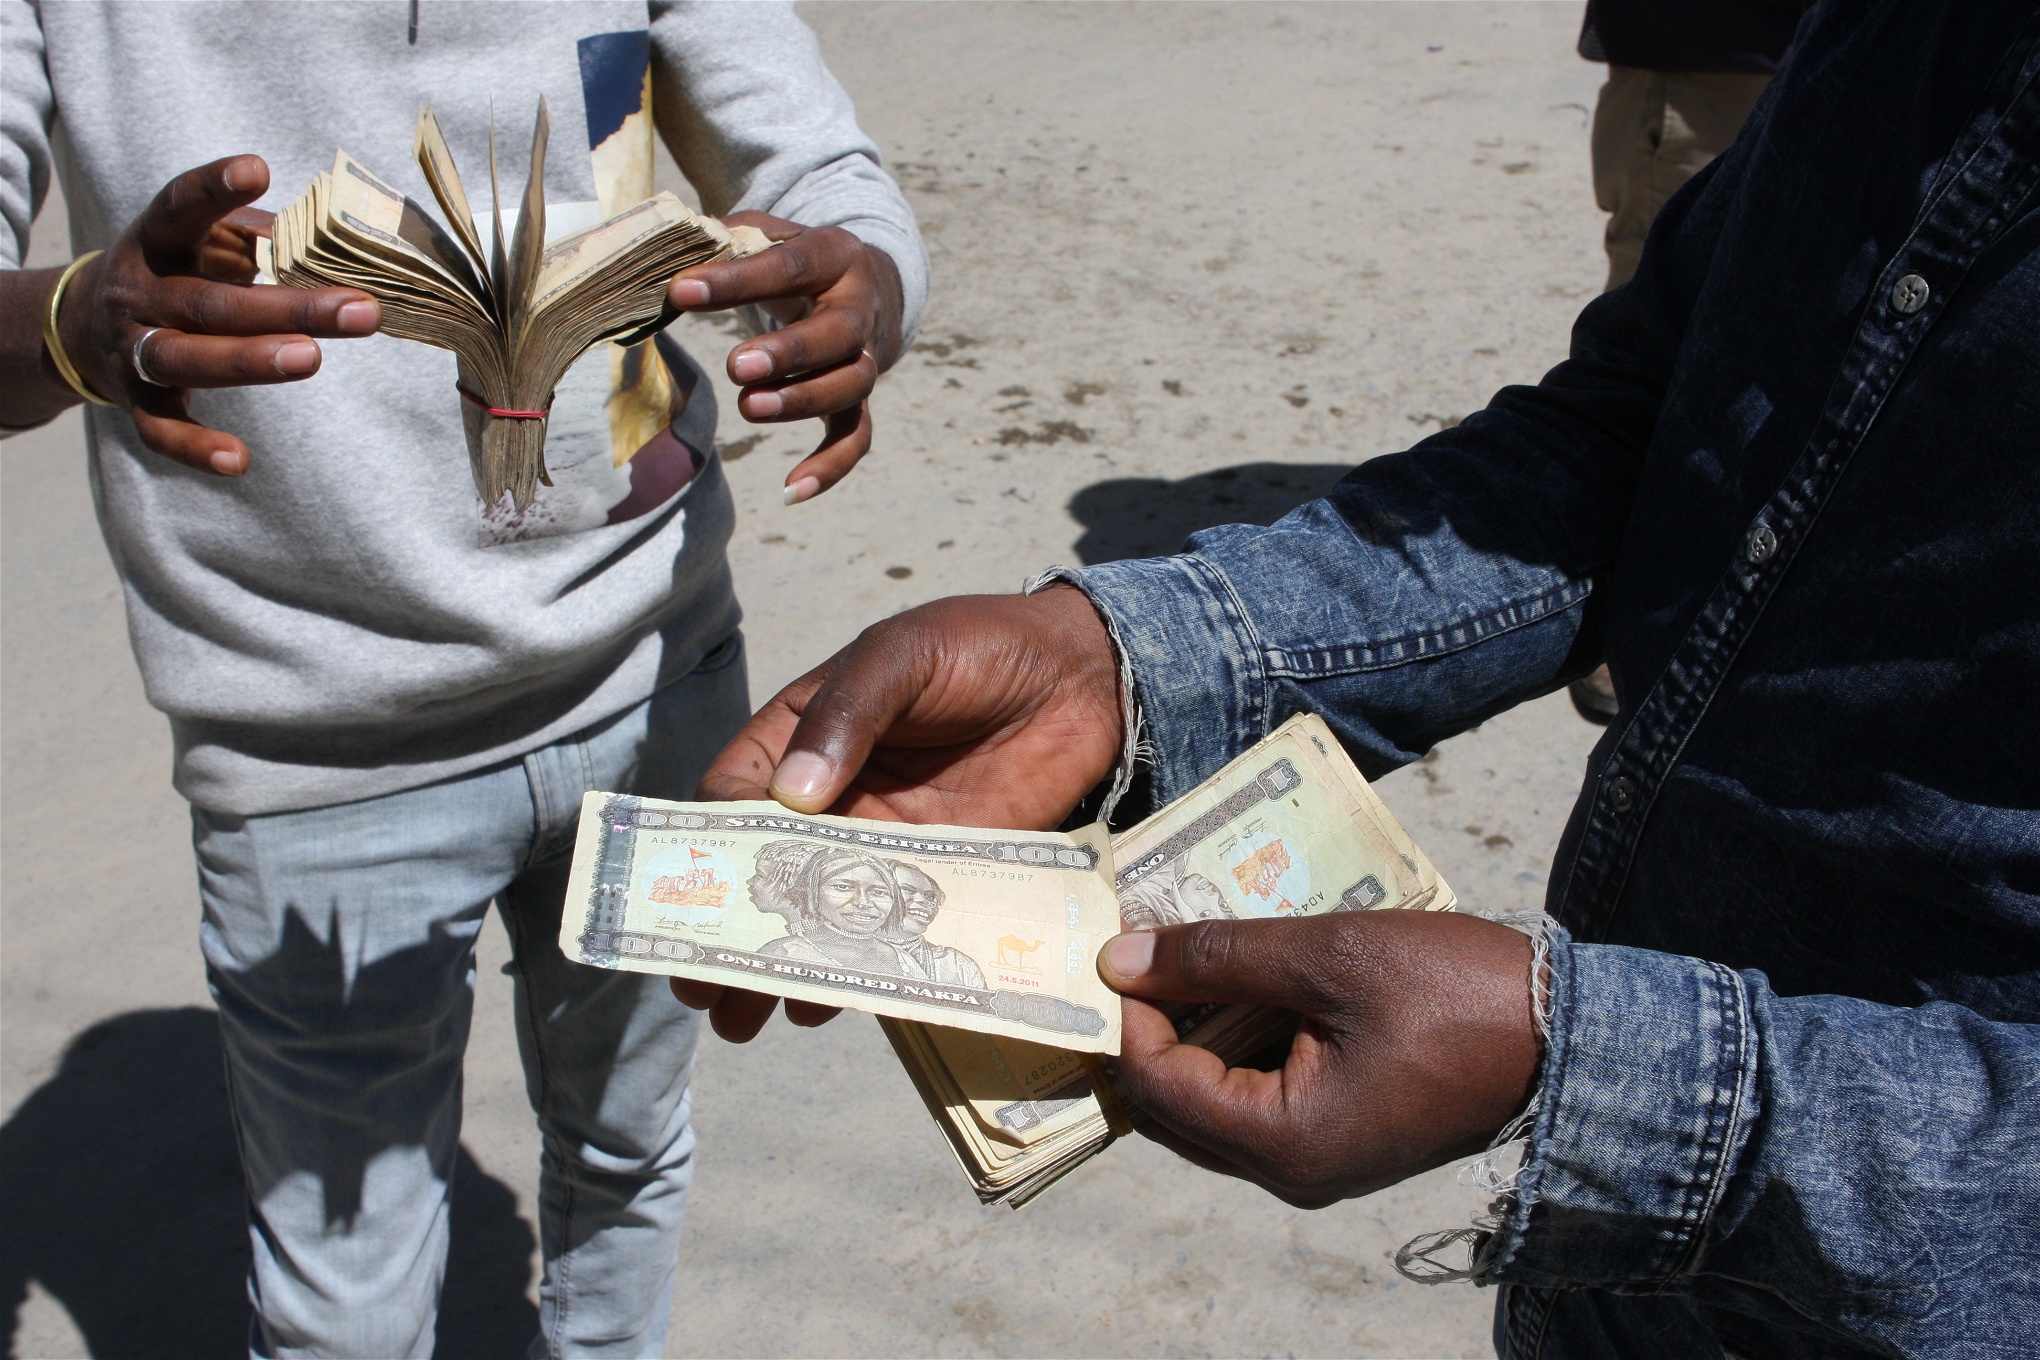 Affärerna går bra för Tesfaye som jobbar extra som valutaväxlare vid ländernas gräns. Han växlar mellan etiopiska birr och eritreanska nakfa. 